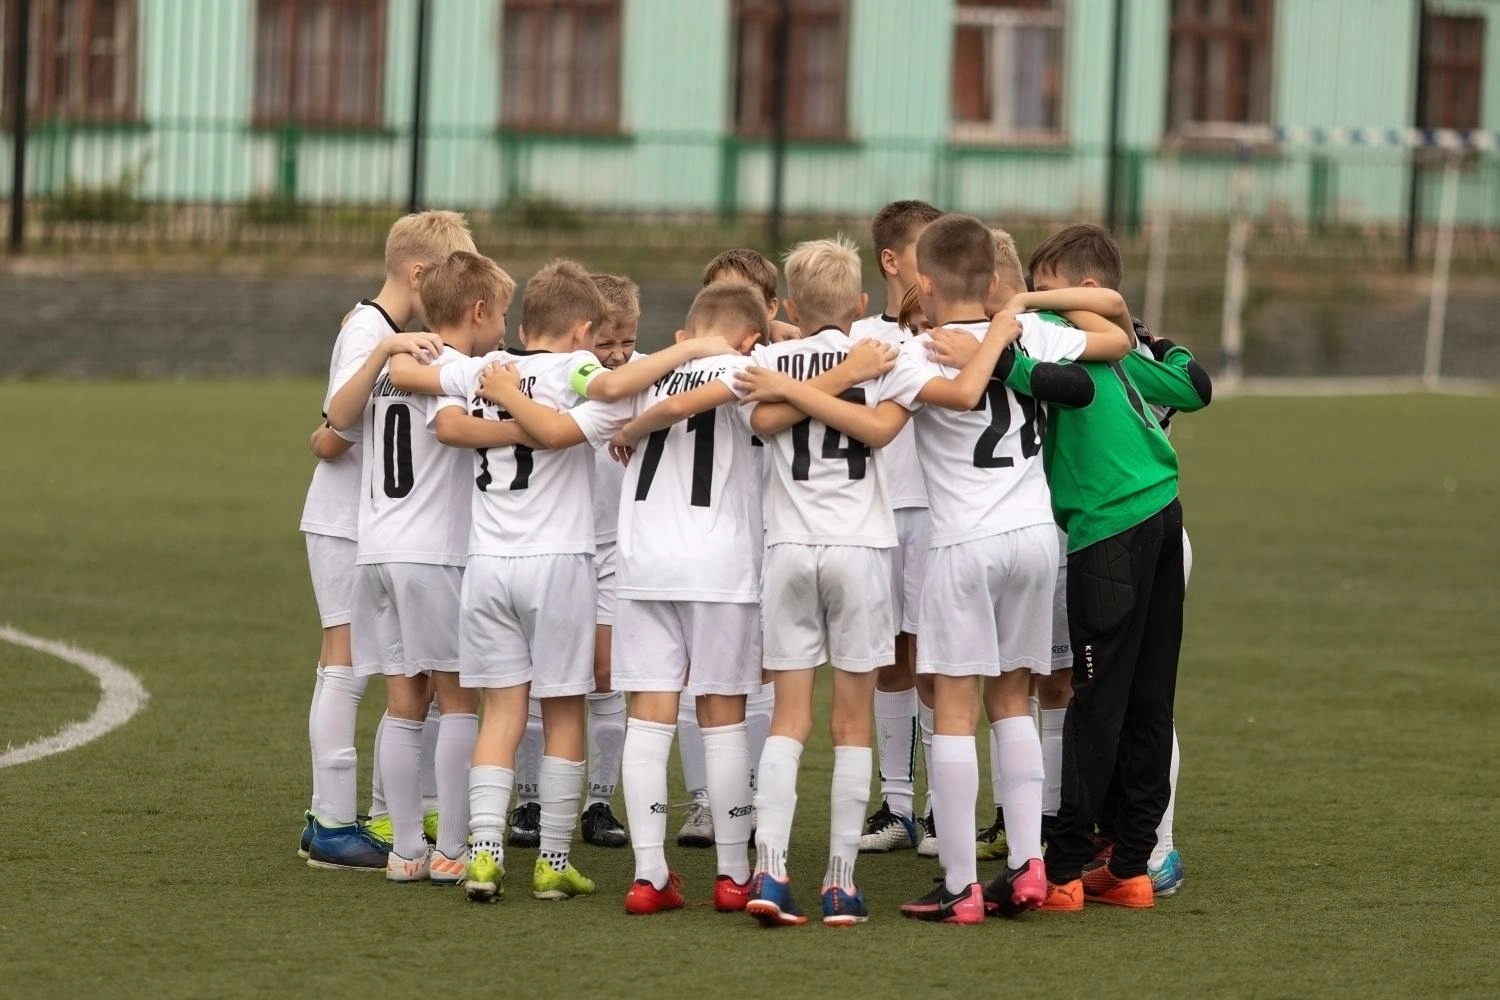 Teilnahme an einem internationalen Fußballturnier  und Teambuilding für benachteiligte Kinder